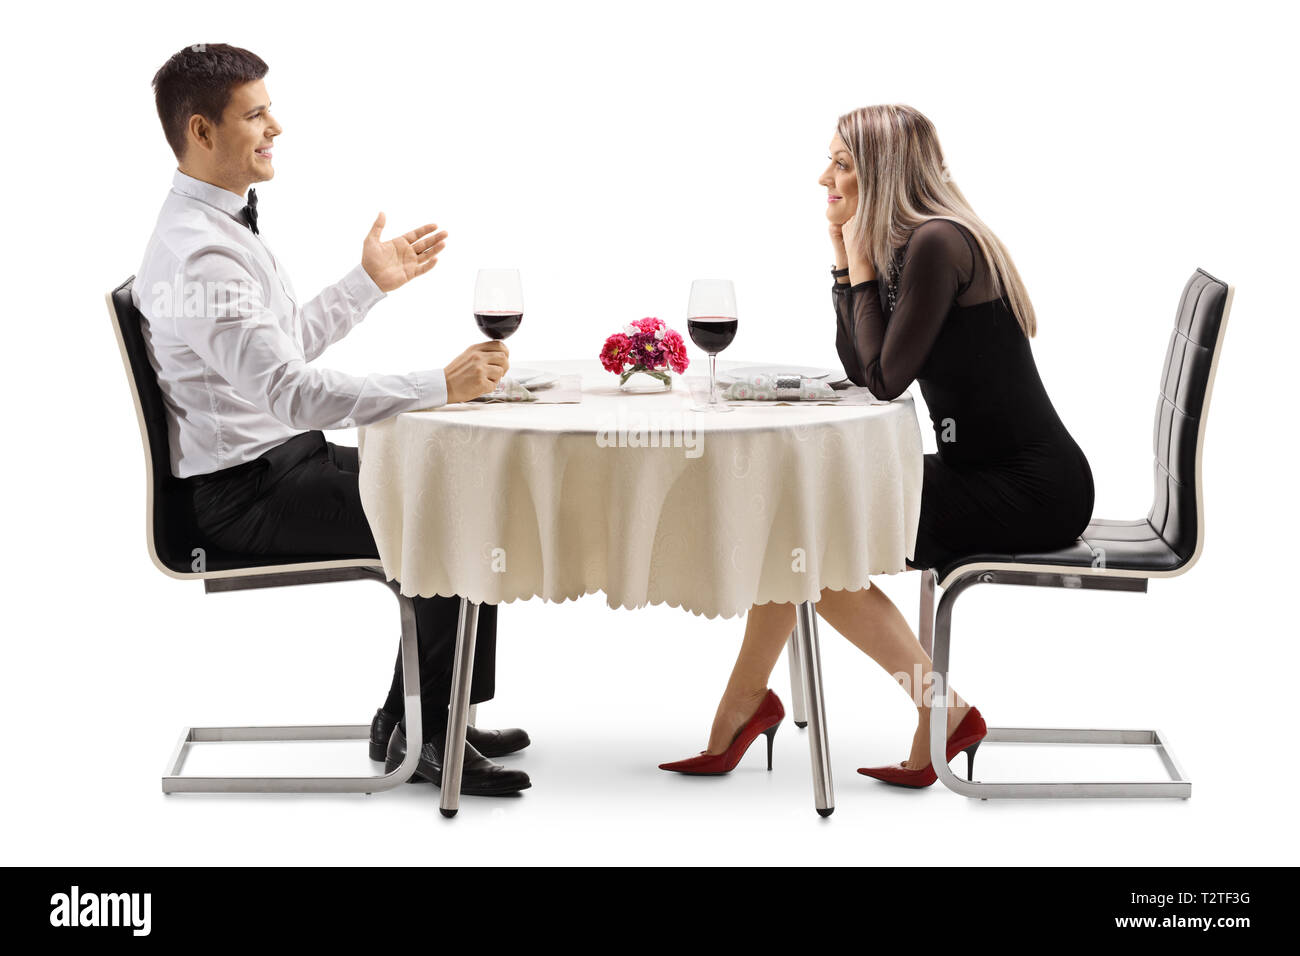 Volle Länge Profil Schoß eines jungen Mannes mit einer jungen Frau an einem Tisch im Restaurant auf weißem Hintergrund Stockfoto